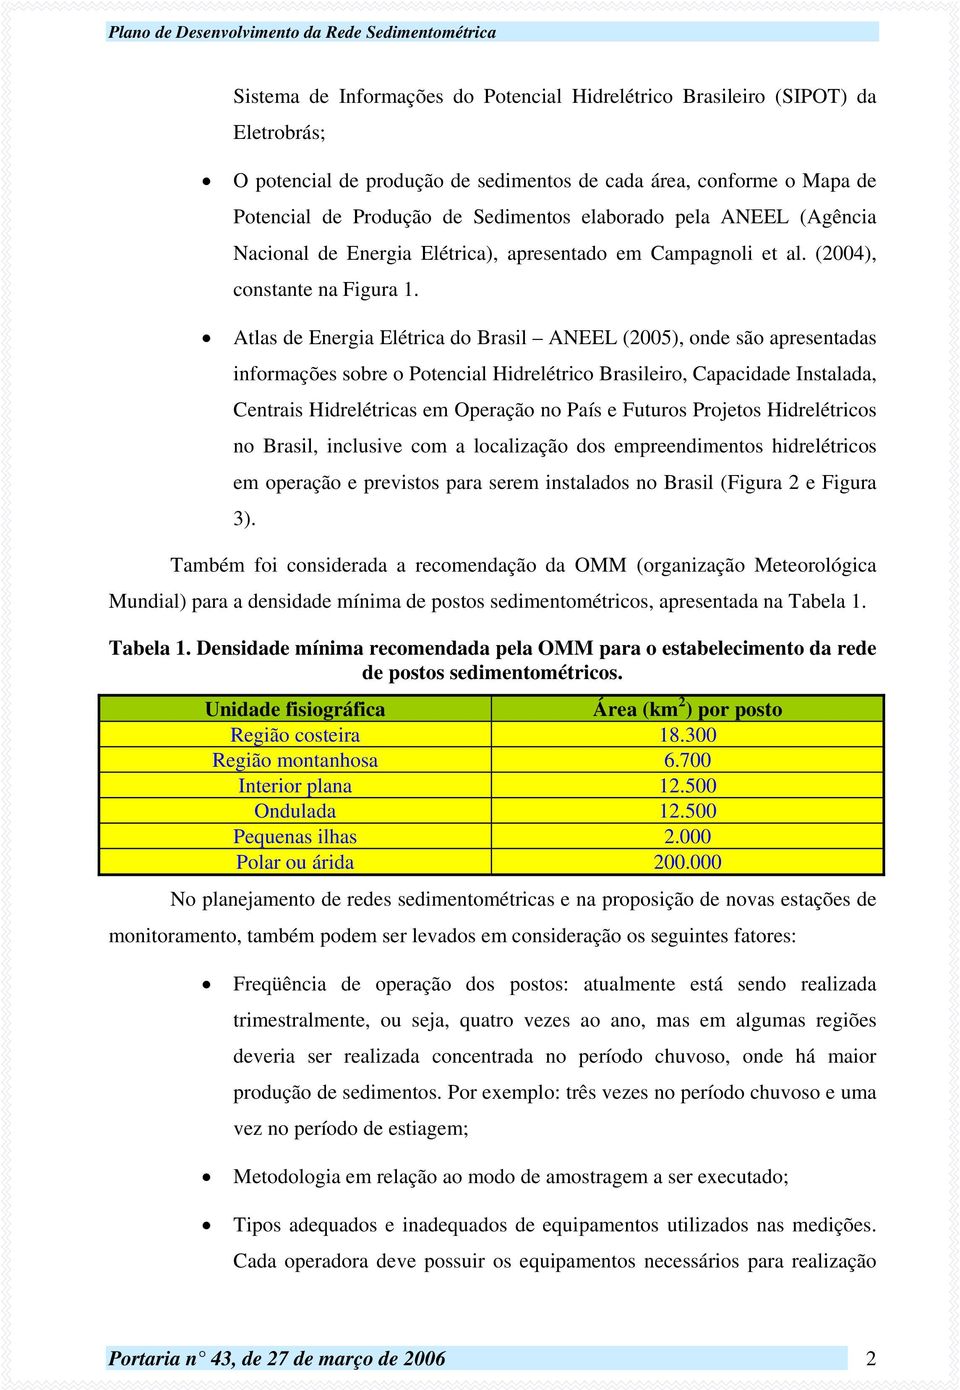 Atlas de Energia Elétrica do Brasil ANEEL (2005), onde são apresentadas informações sobre o Potencial Hidrelétrico Brasileiro, Capacidade Instalada, Centrais Hidrelétricas em Operação no País e